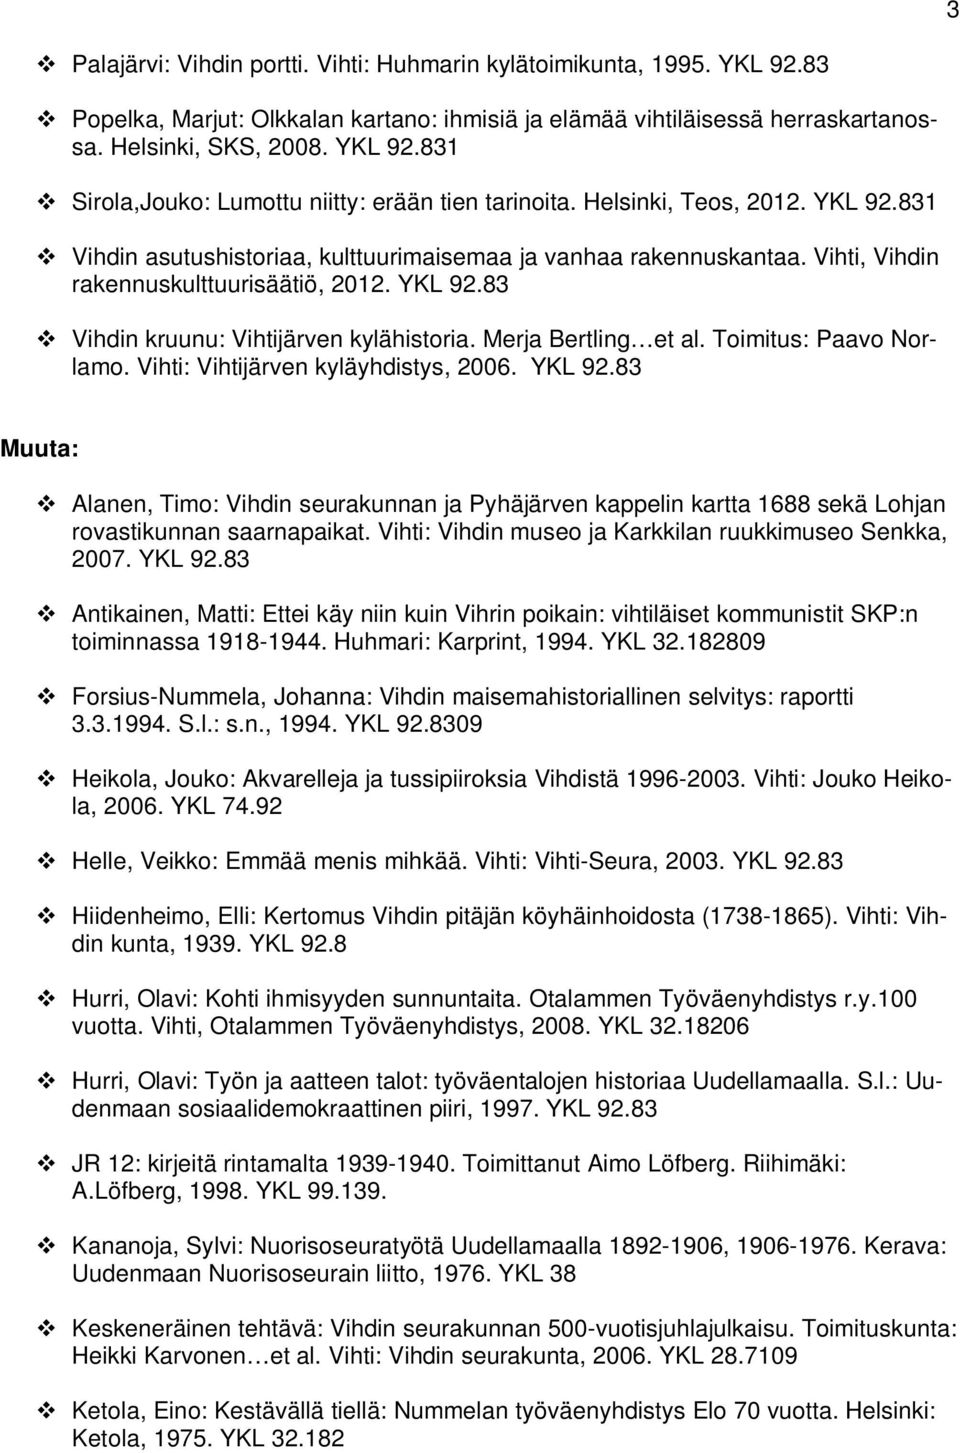 Merja Bertling et al. Toimitus: Paavo Norlamo. Vihti: Vihtijärven kyläyhdistys, 2006. YKL 92.